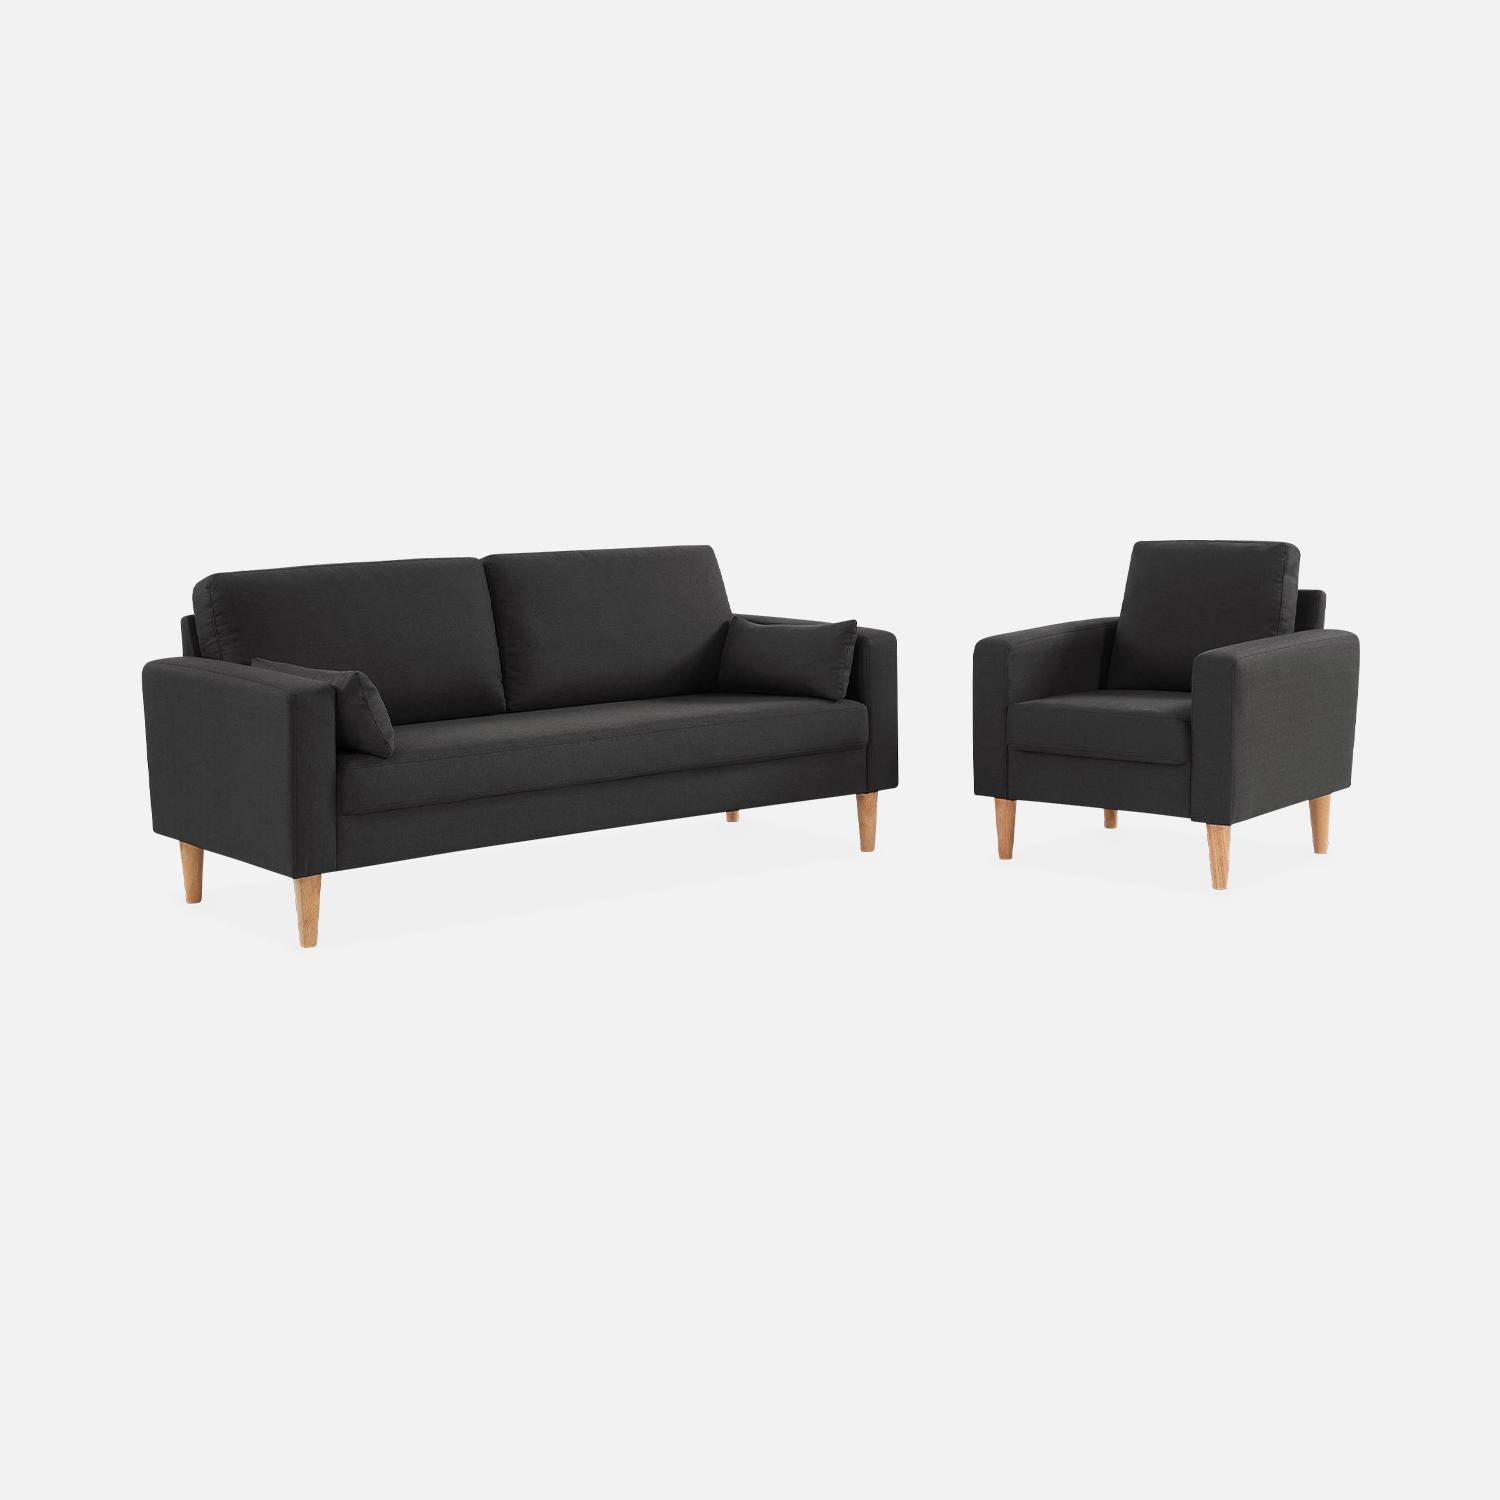 Donkergrijze stoffen zetel - Bjorn - 1-zits sofa met houten poten, Scandinavische stijl,sweeek,Photo5